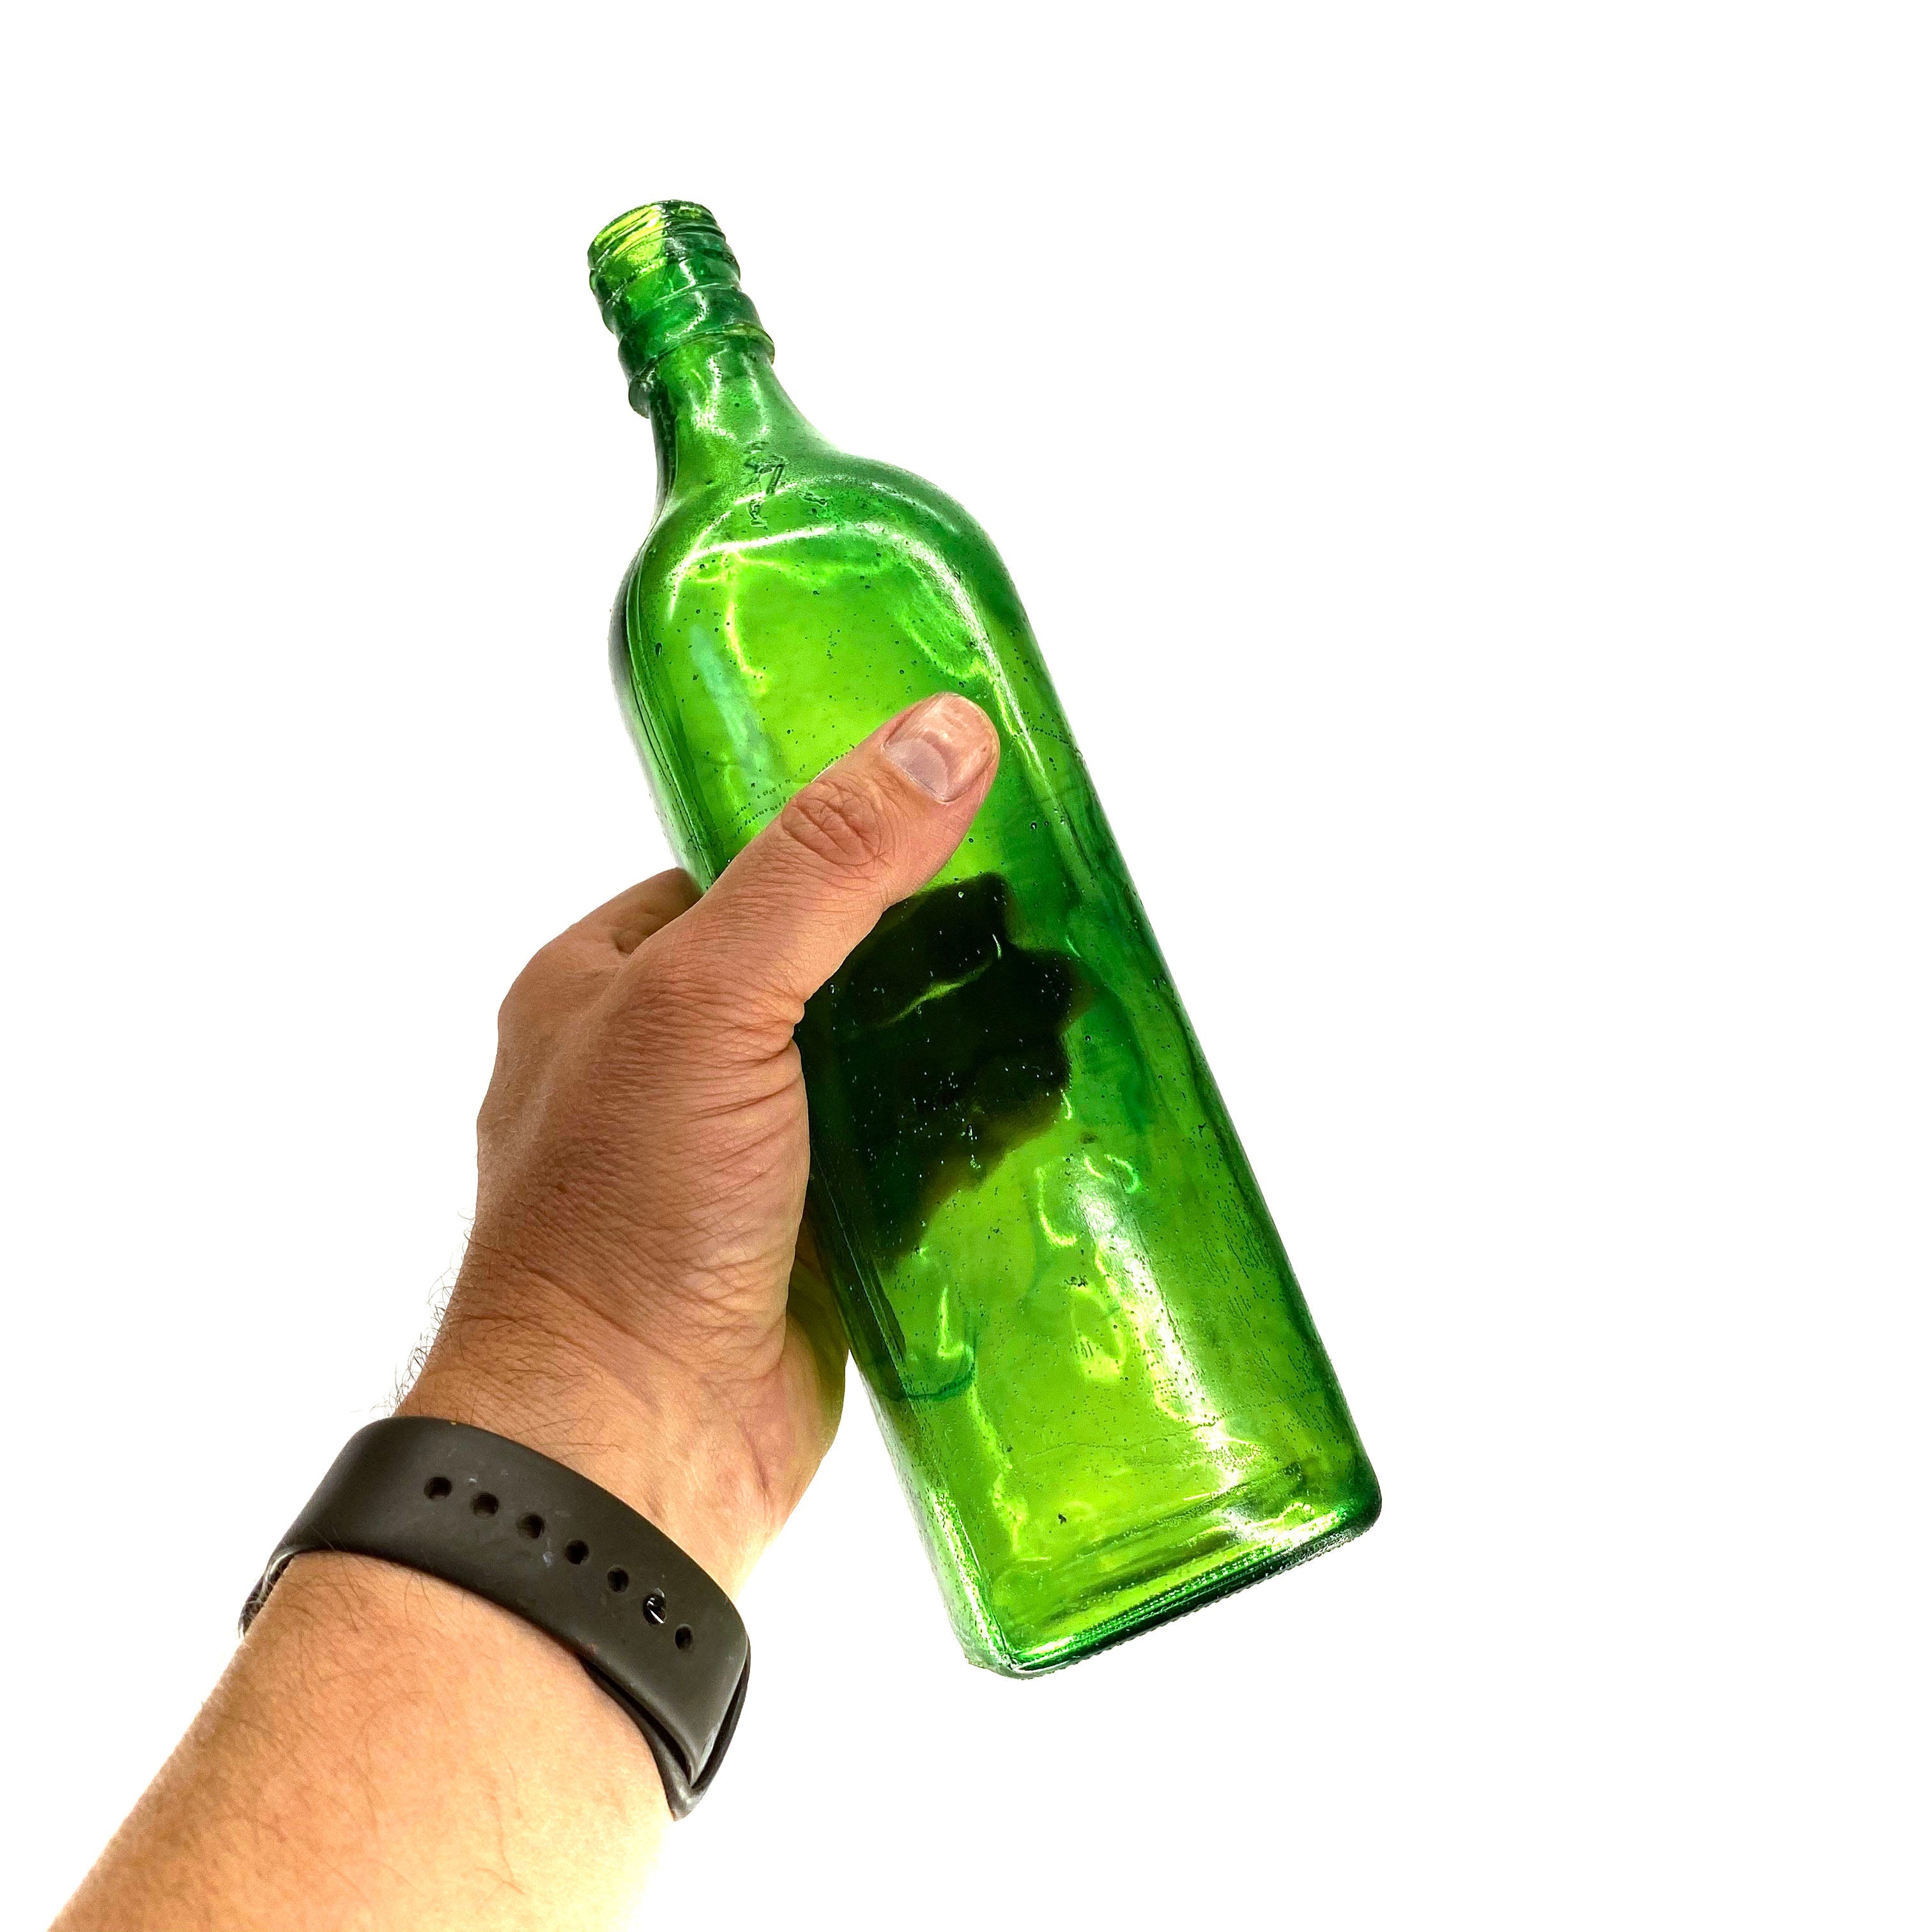 SMASHProps Breakaway Scotch Whiskey Bottle Prop - DARK GREEN translucent - Dark Green Translucent